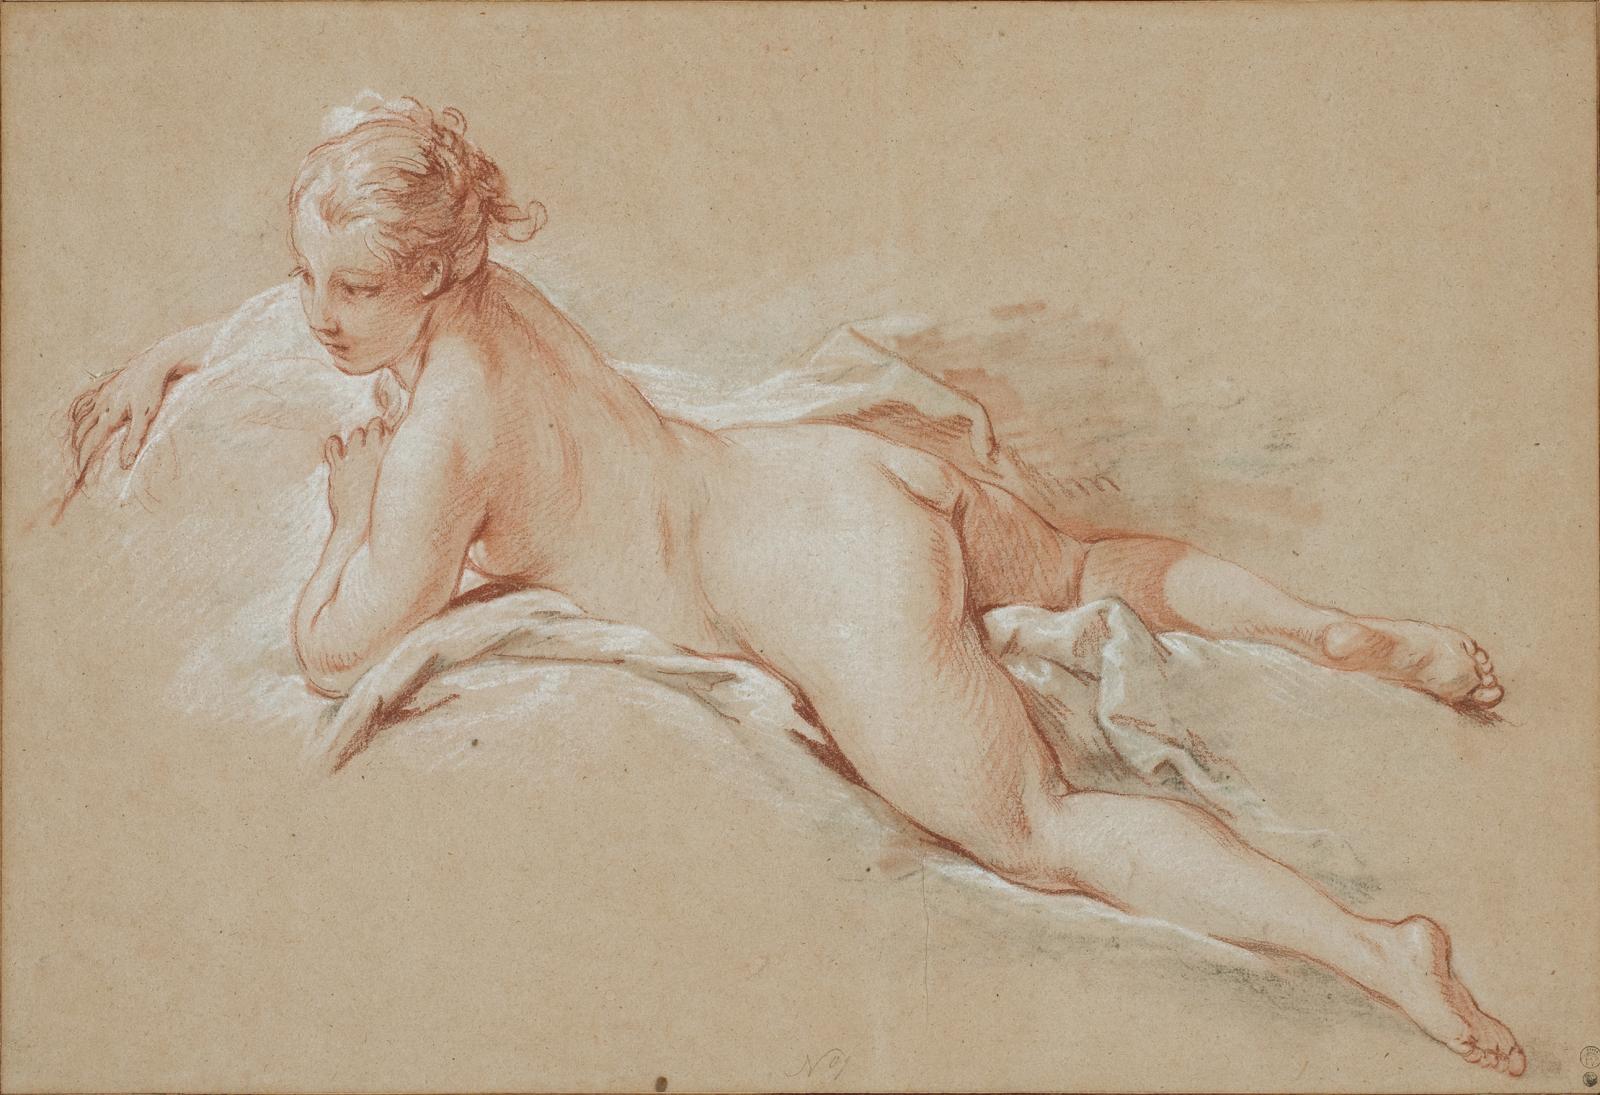 François Boucher (1703-1770), Femme nue allongée, vers 1740, sanguine, pierre noire et craie blanche sur papier crème. © The Horvitz Collection © Phot